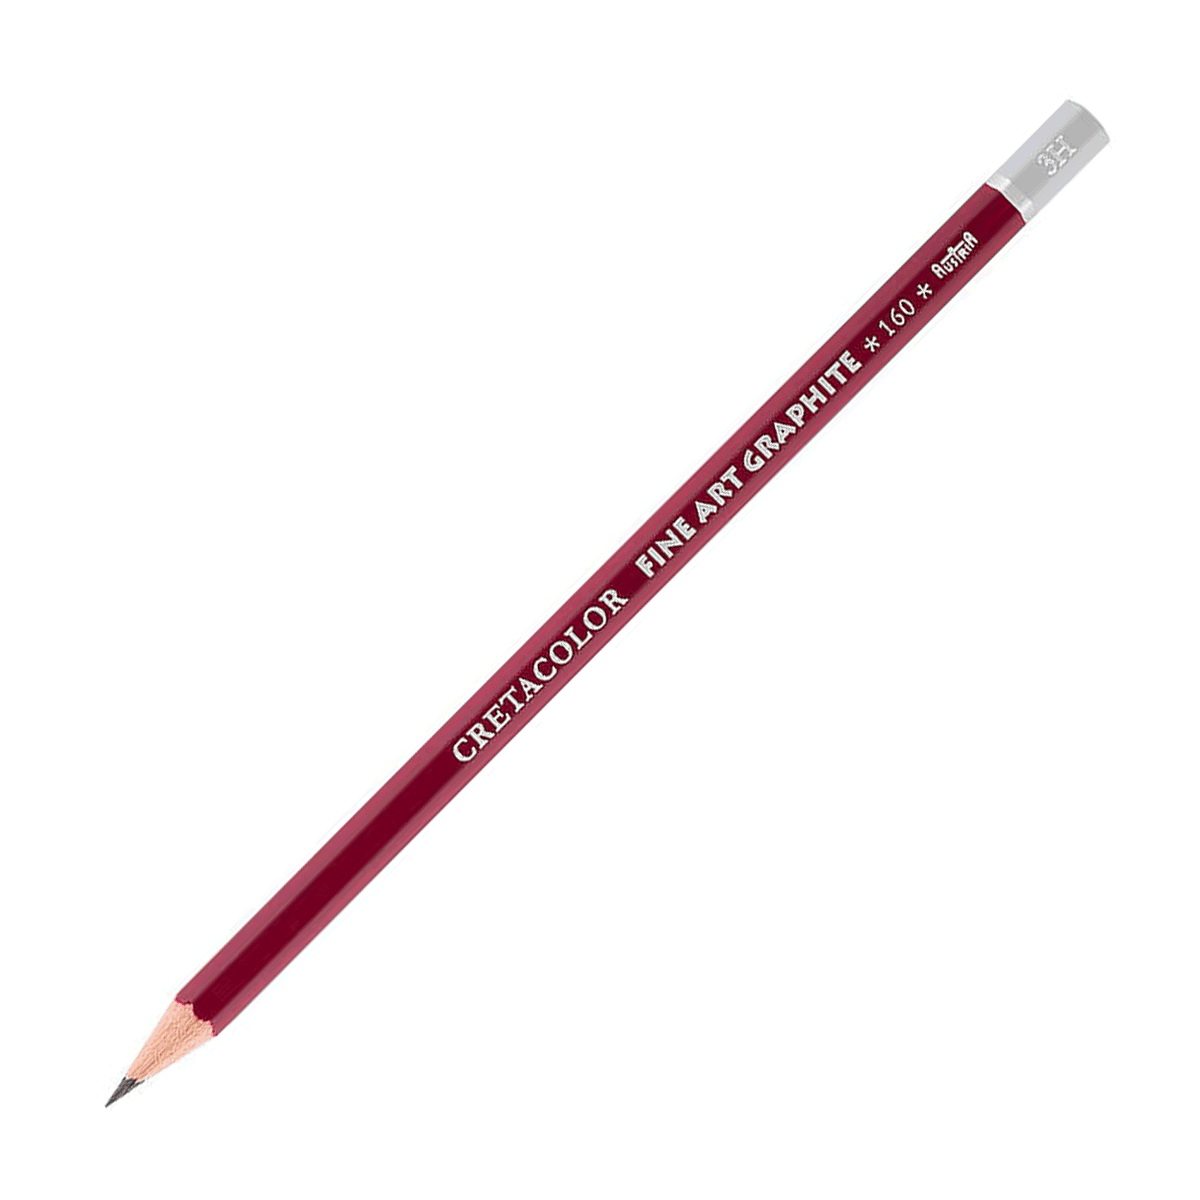 Cretacolor Fine Art Red Graphite Pencil - 2H